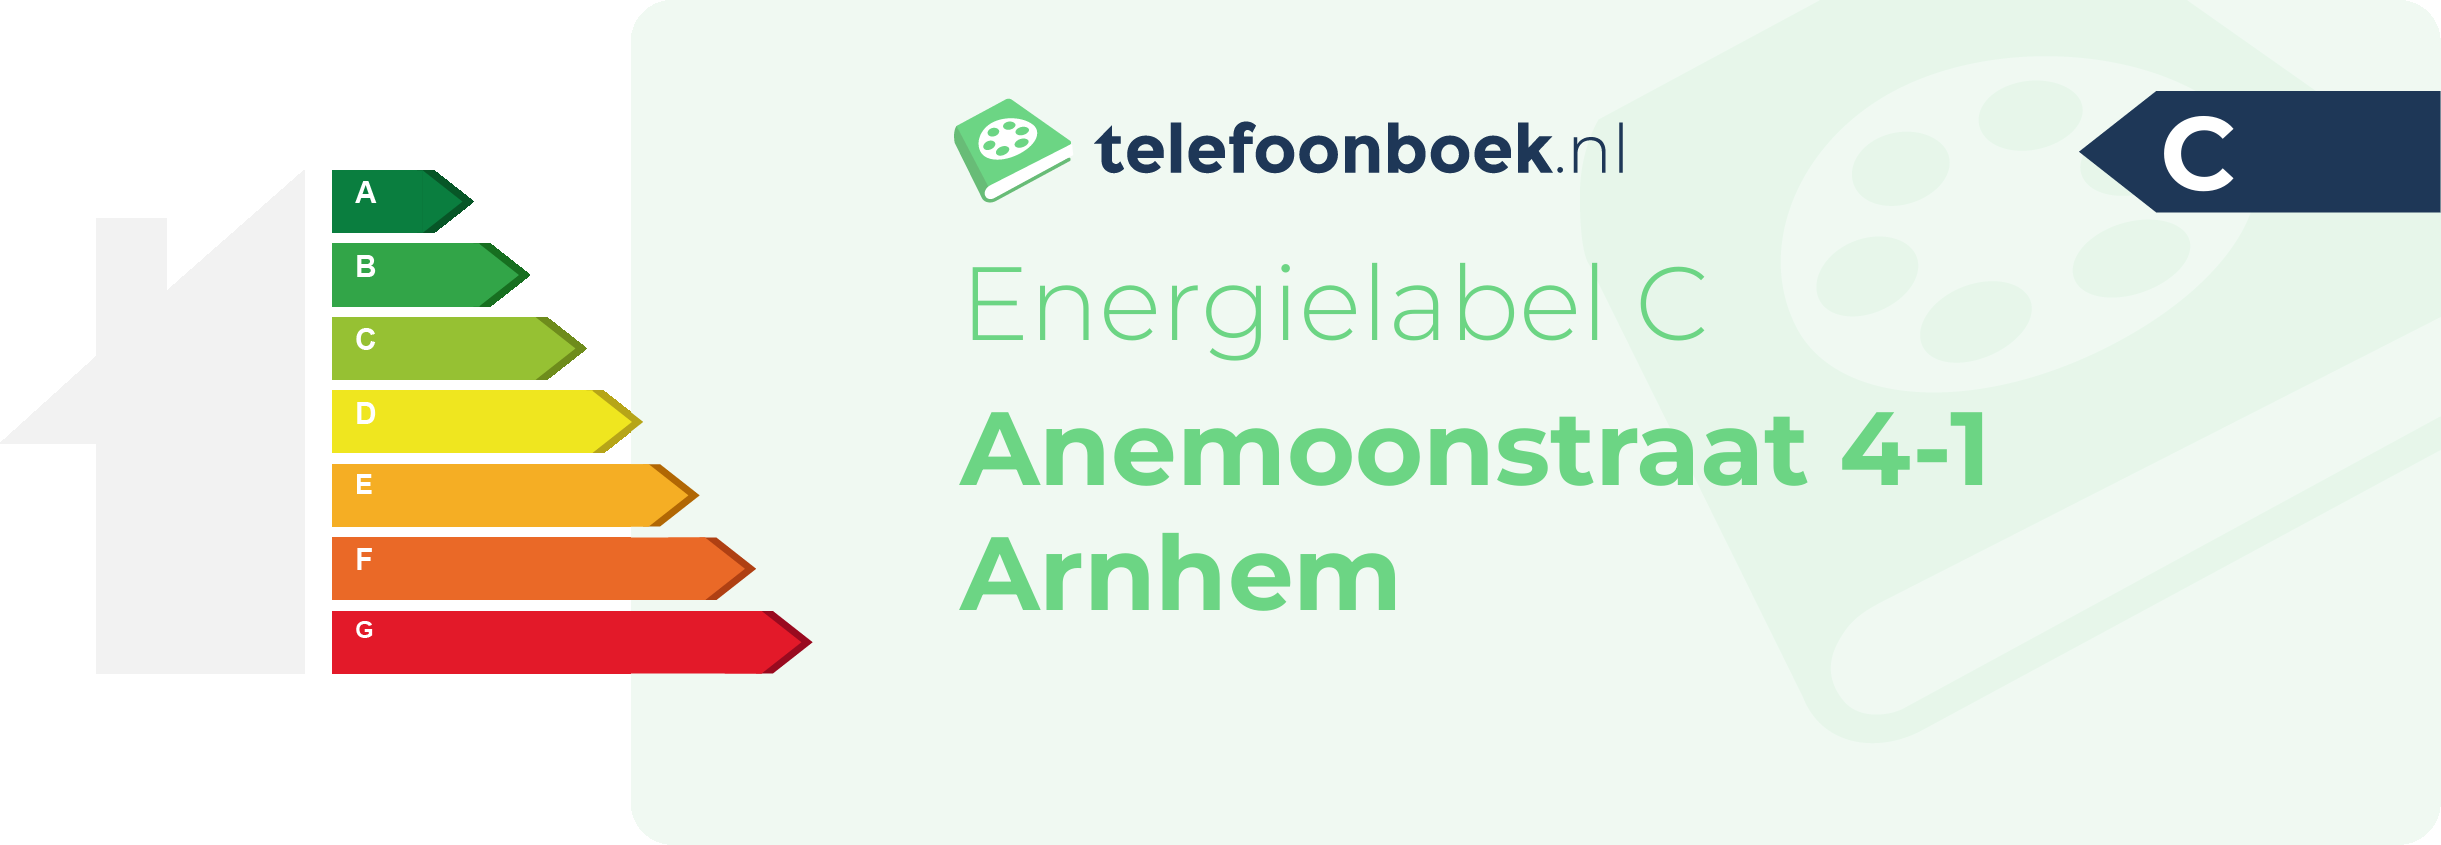 Energielabel Anemoonstraat 4-1 Arnhem